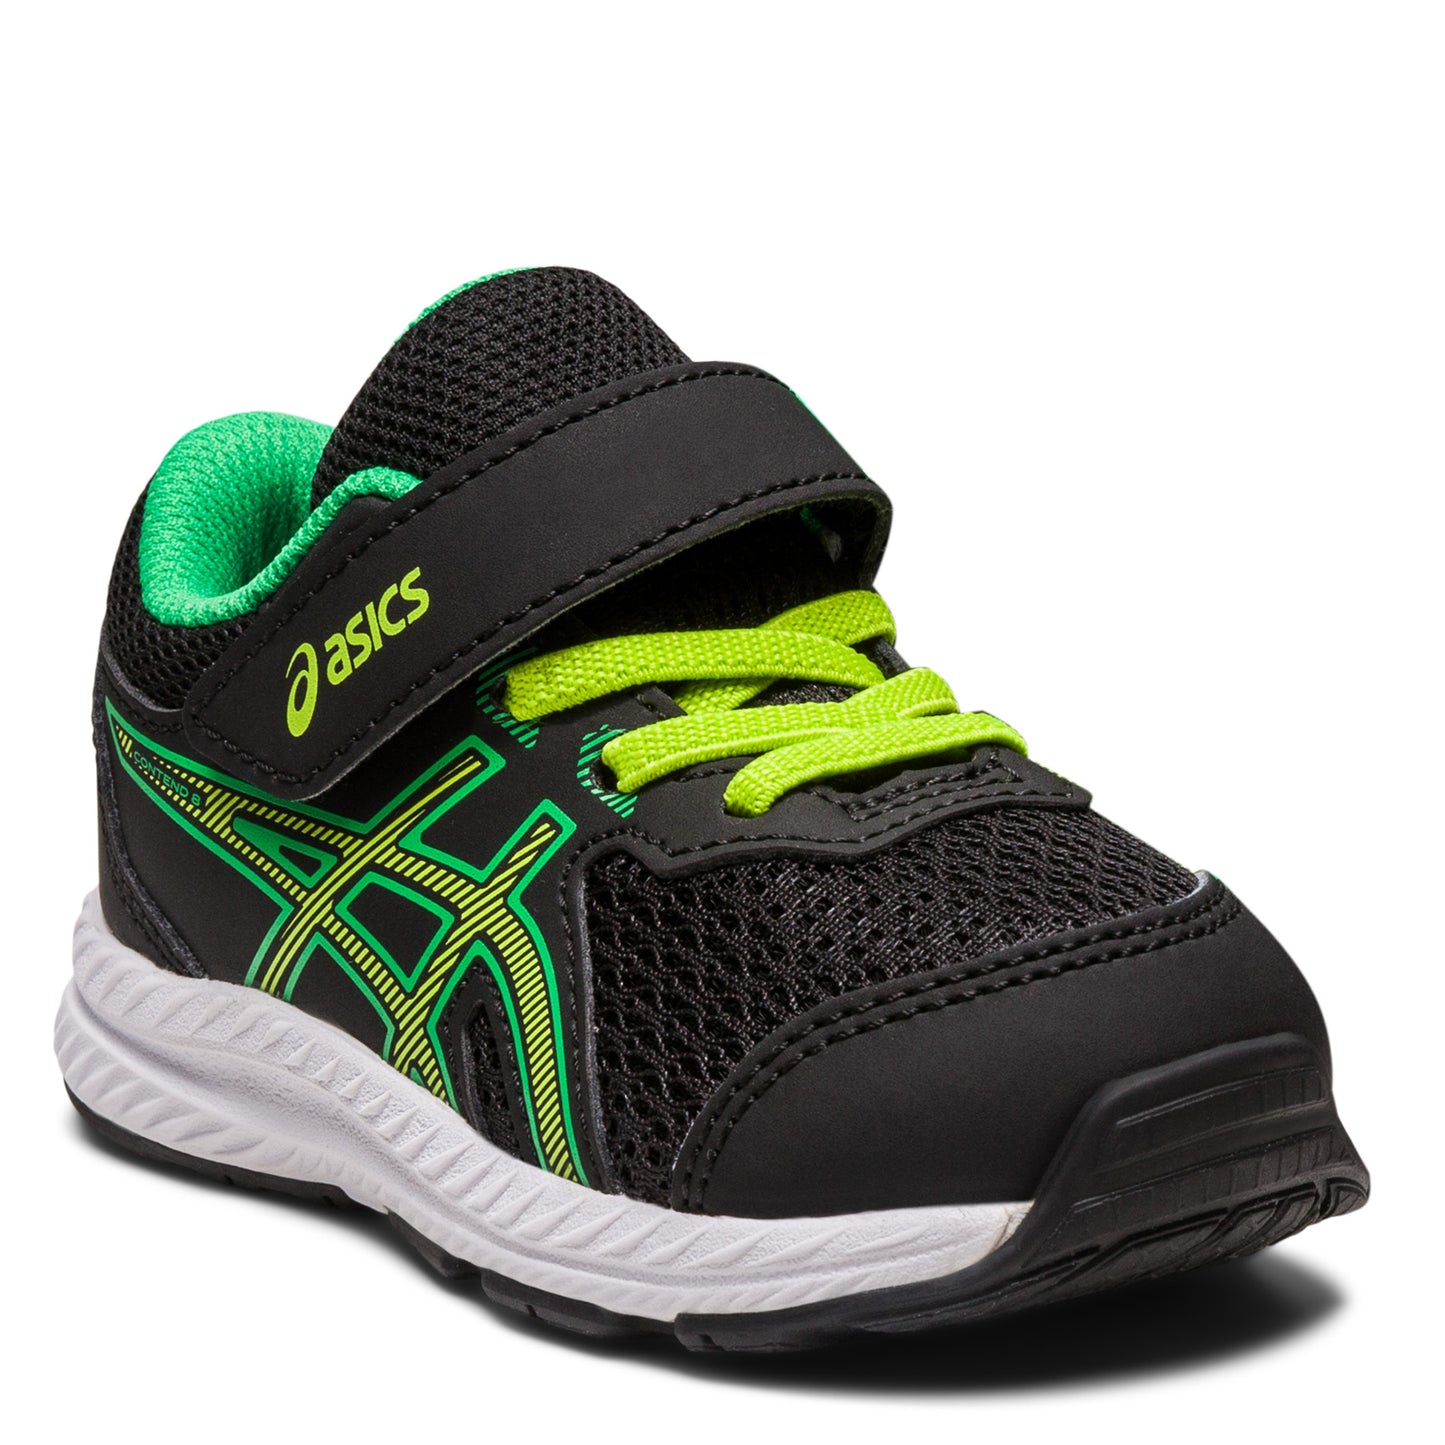 Peltz Shoes  Boy's ASICS Contend 8 Sneaker - Toddler Black Green 1014A260-005